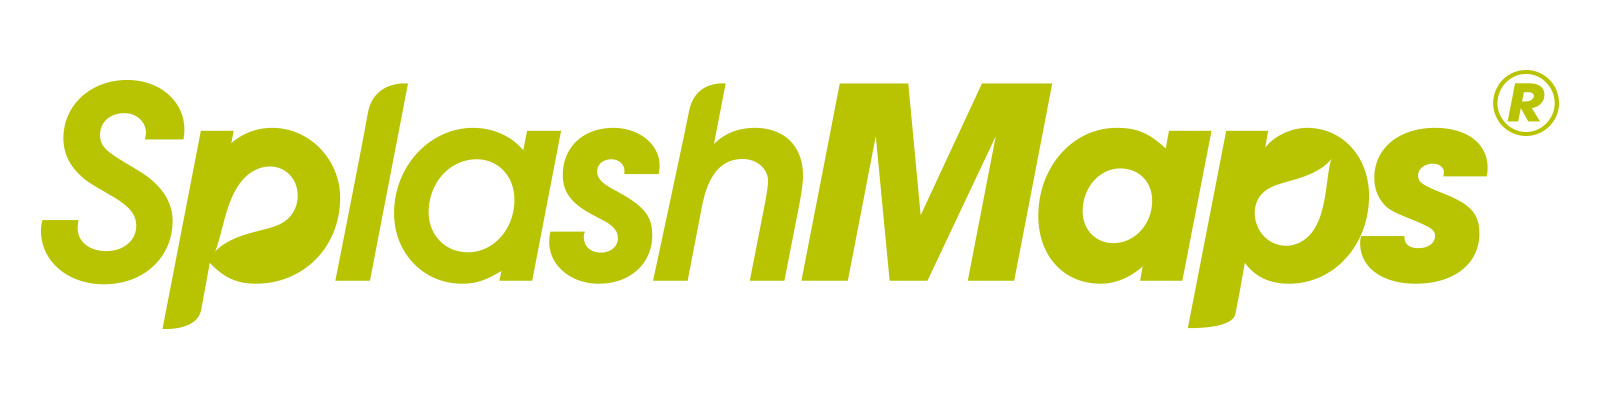 SplashMaps_logo_green